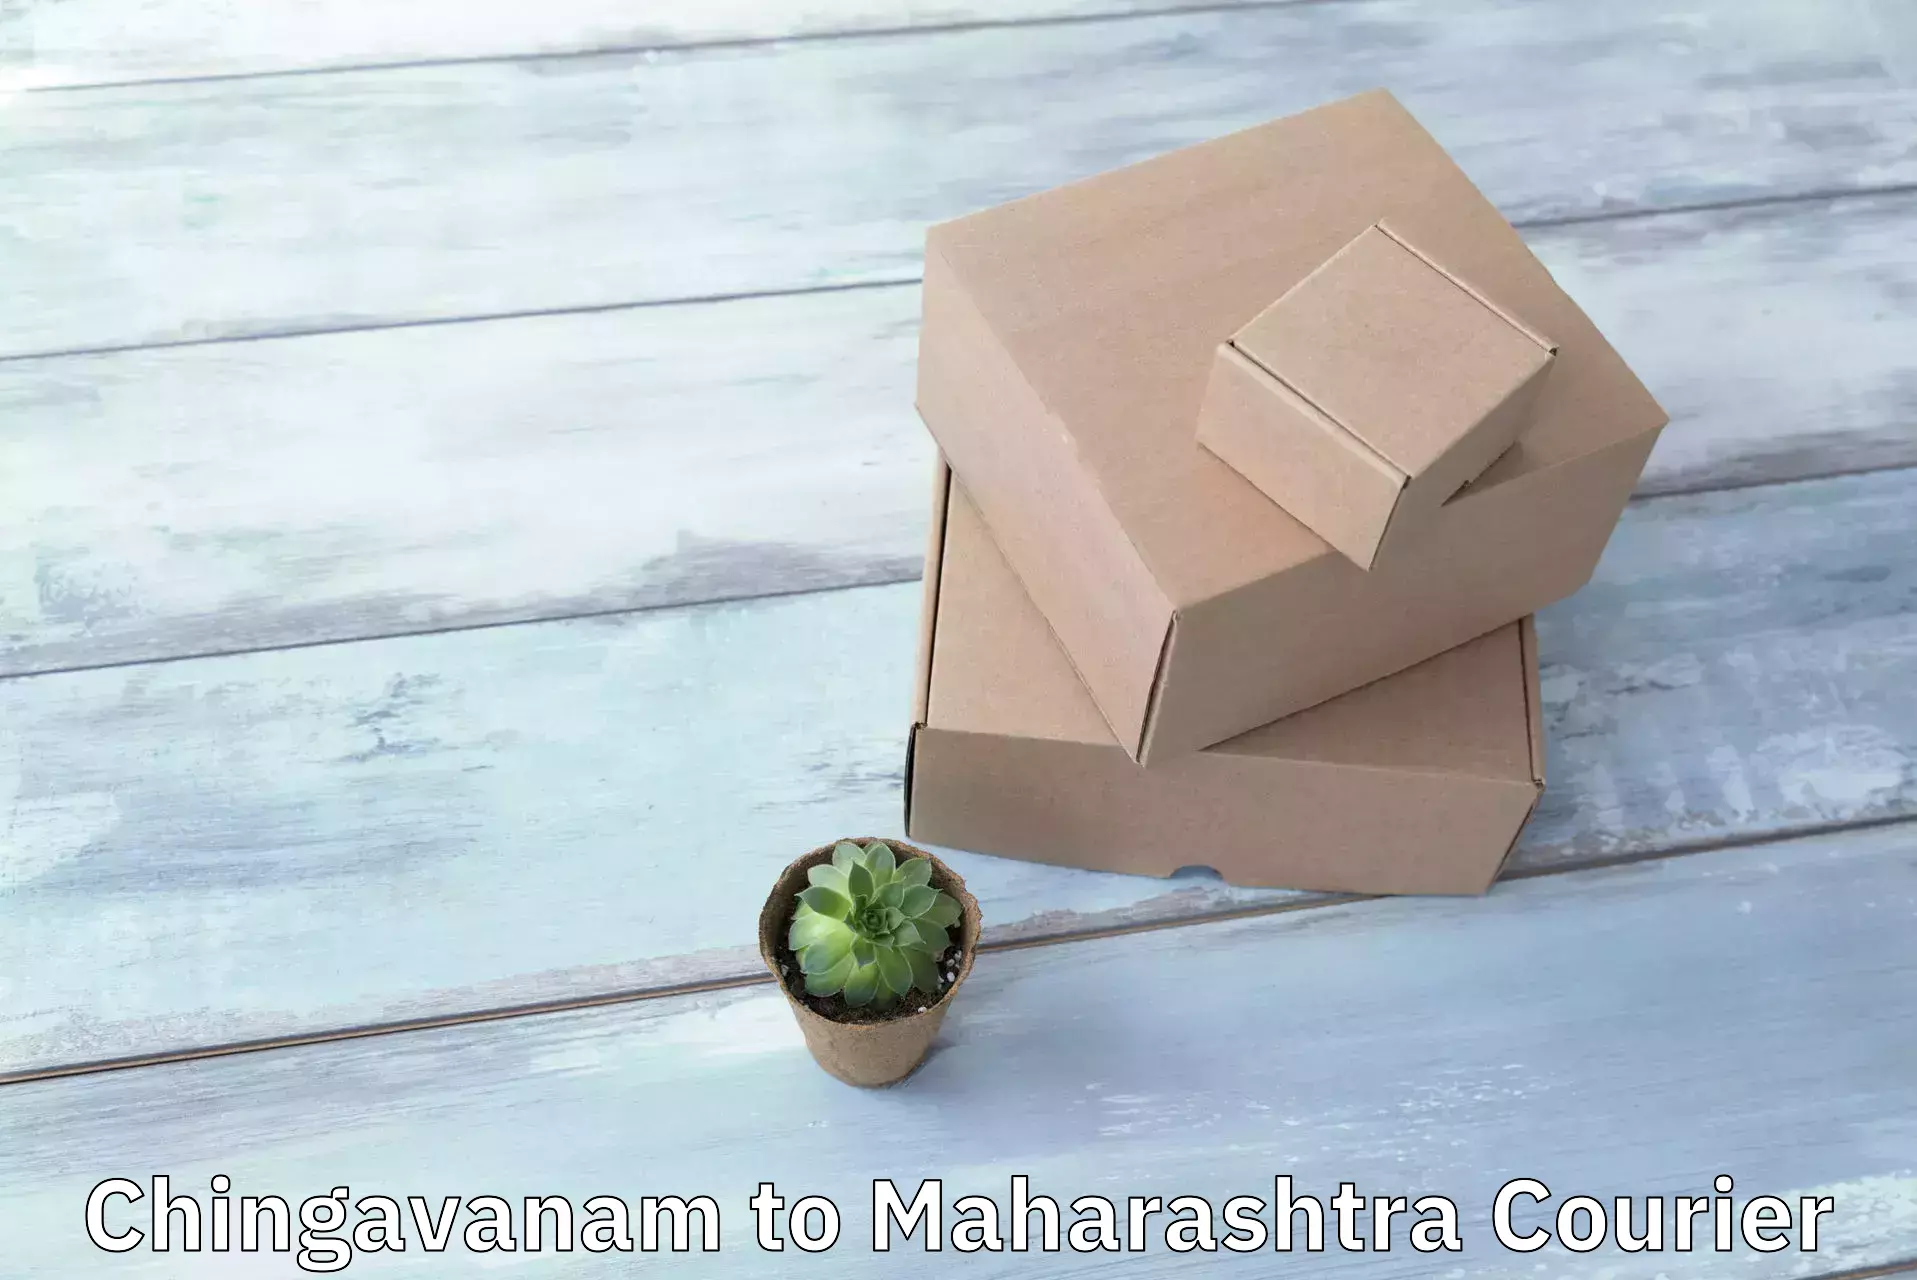 Express courier facilities Chingavanam to Maharashtra